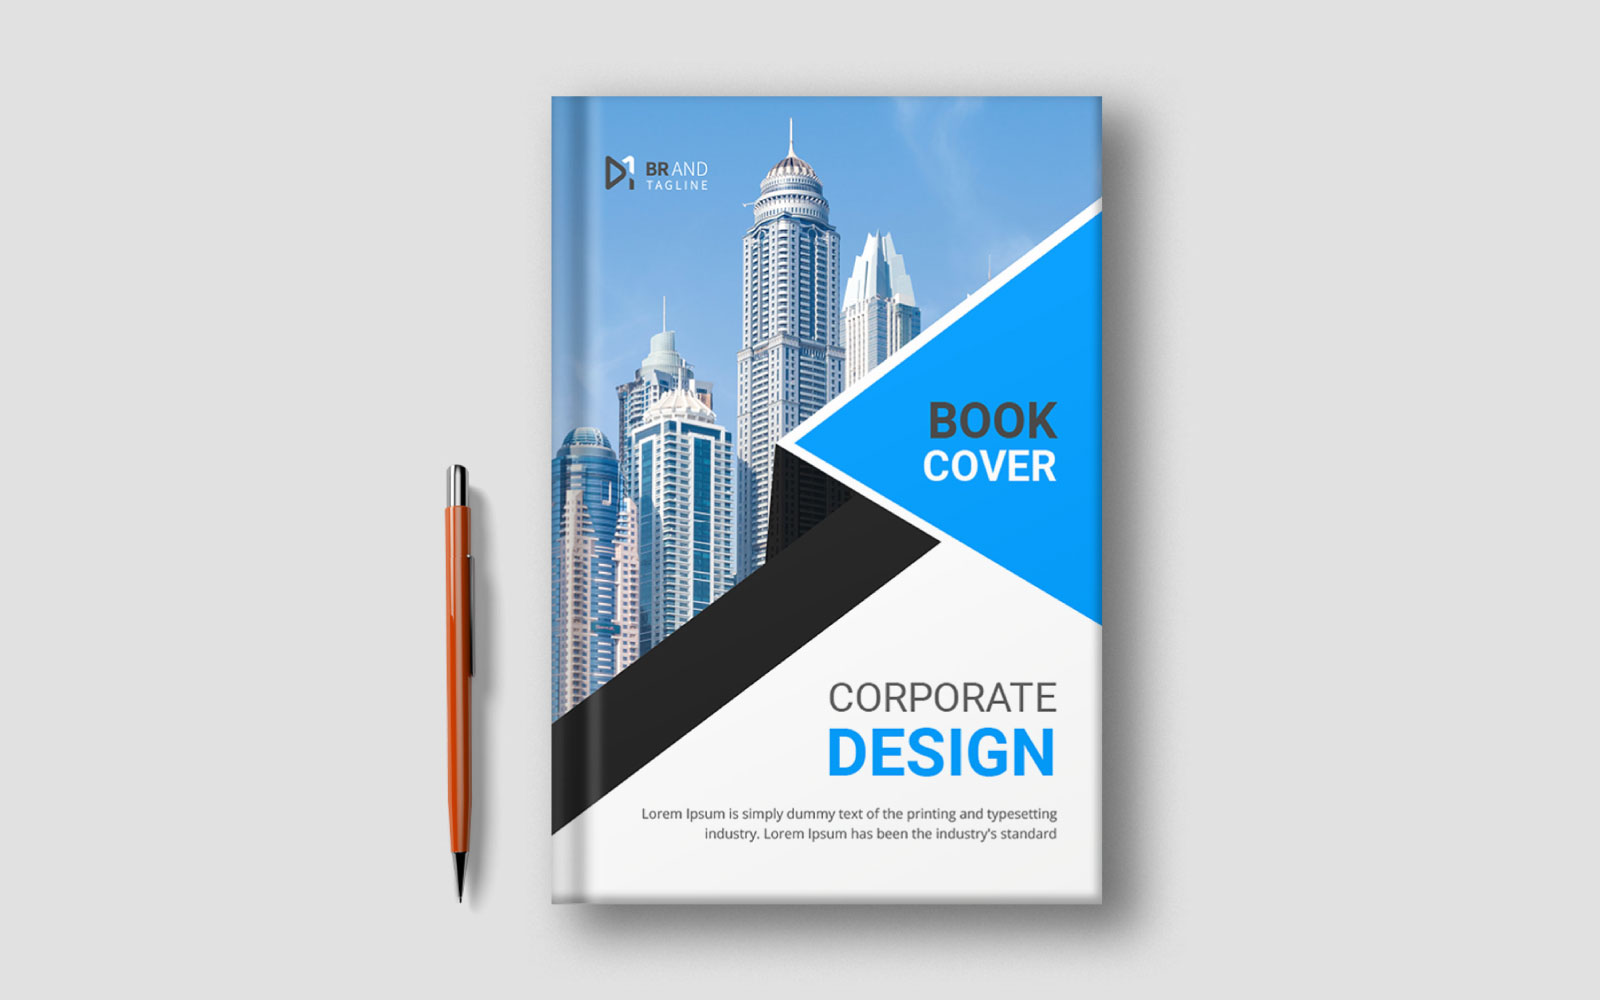 Minimalist book cover template design